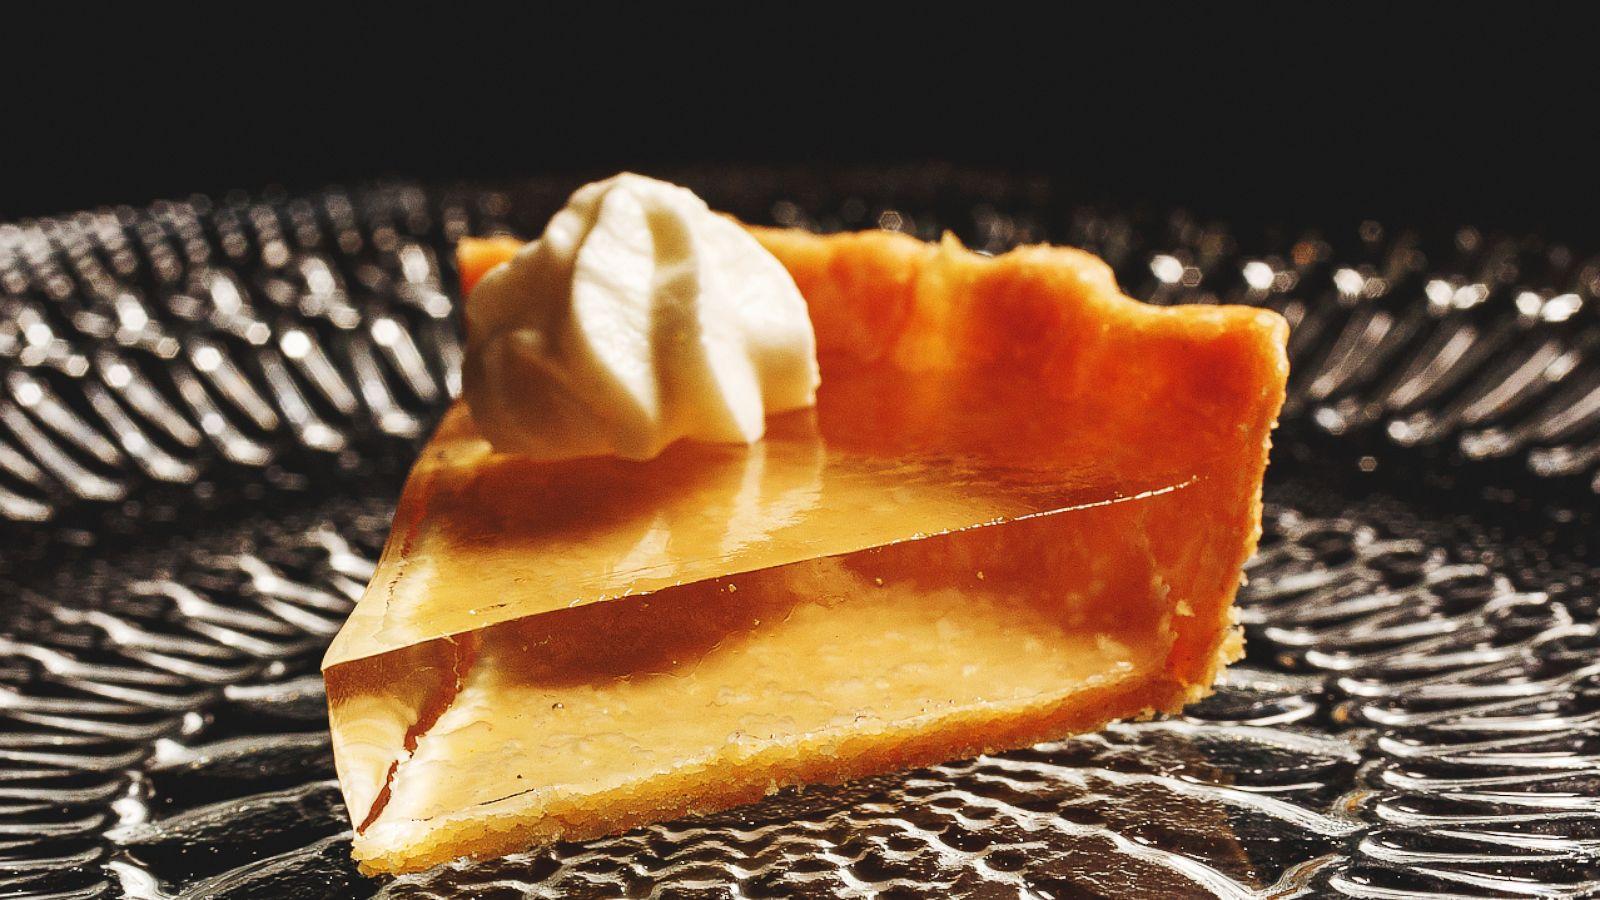 Chicago chef unveils translucent pumpkin pie just in time